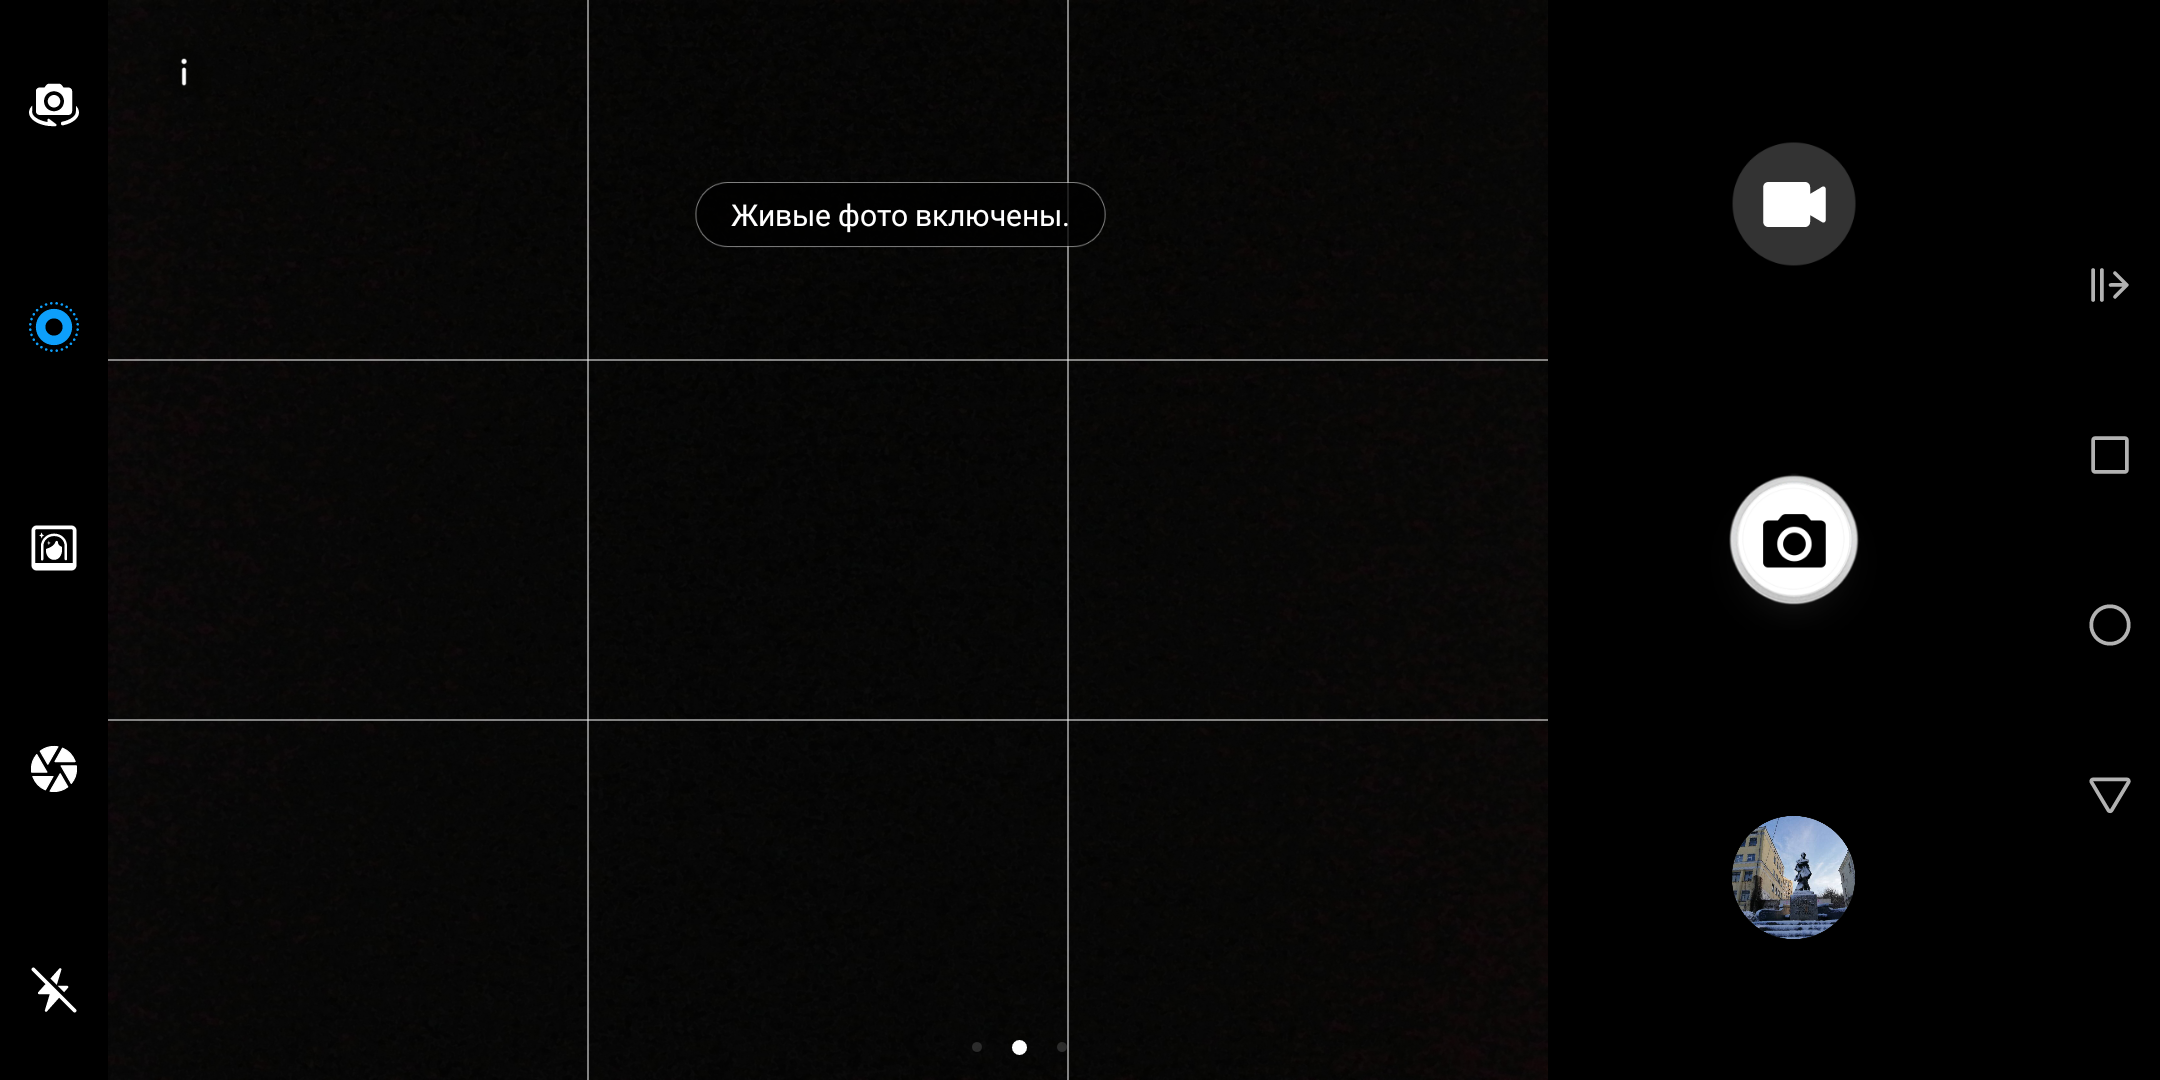 Обзор Huawei Mate 10 Lite: четырёхглазый смартфон с модным дисплеем-187